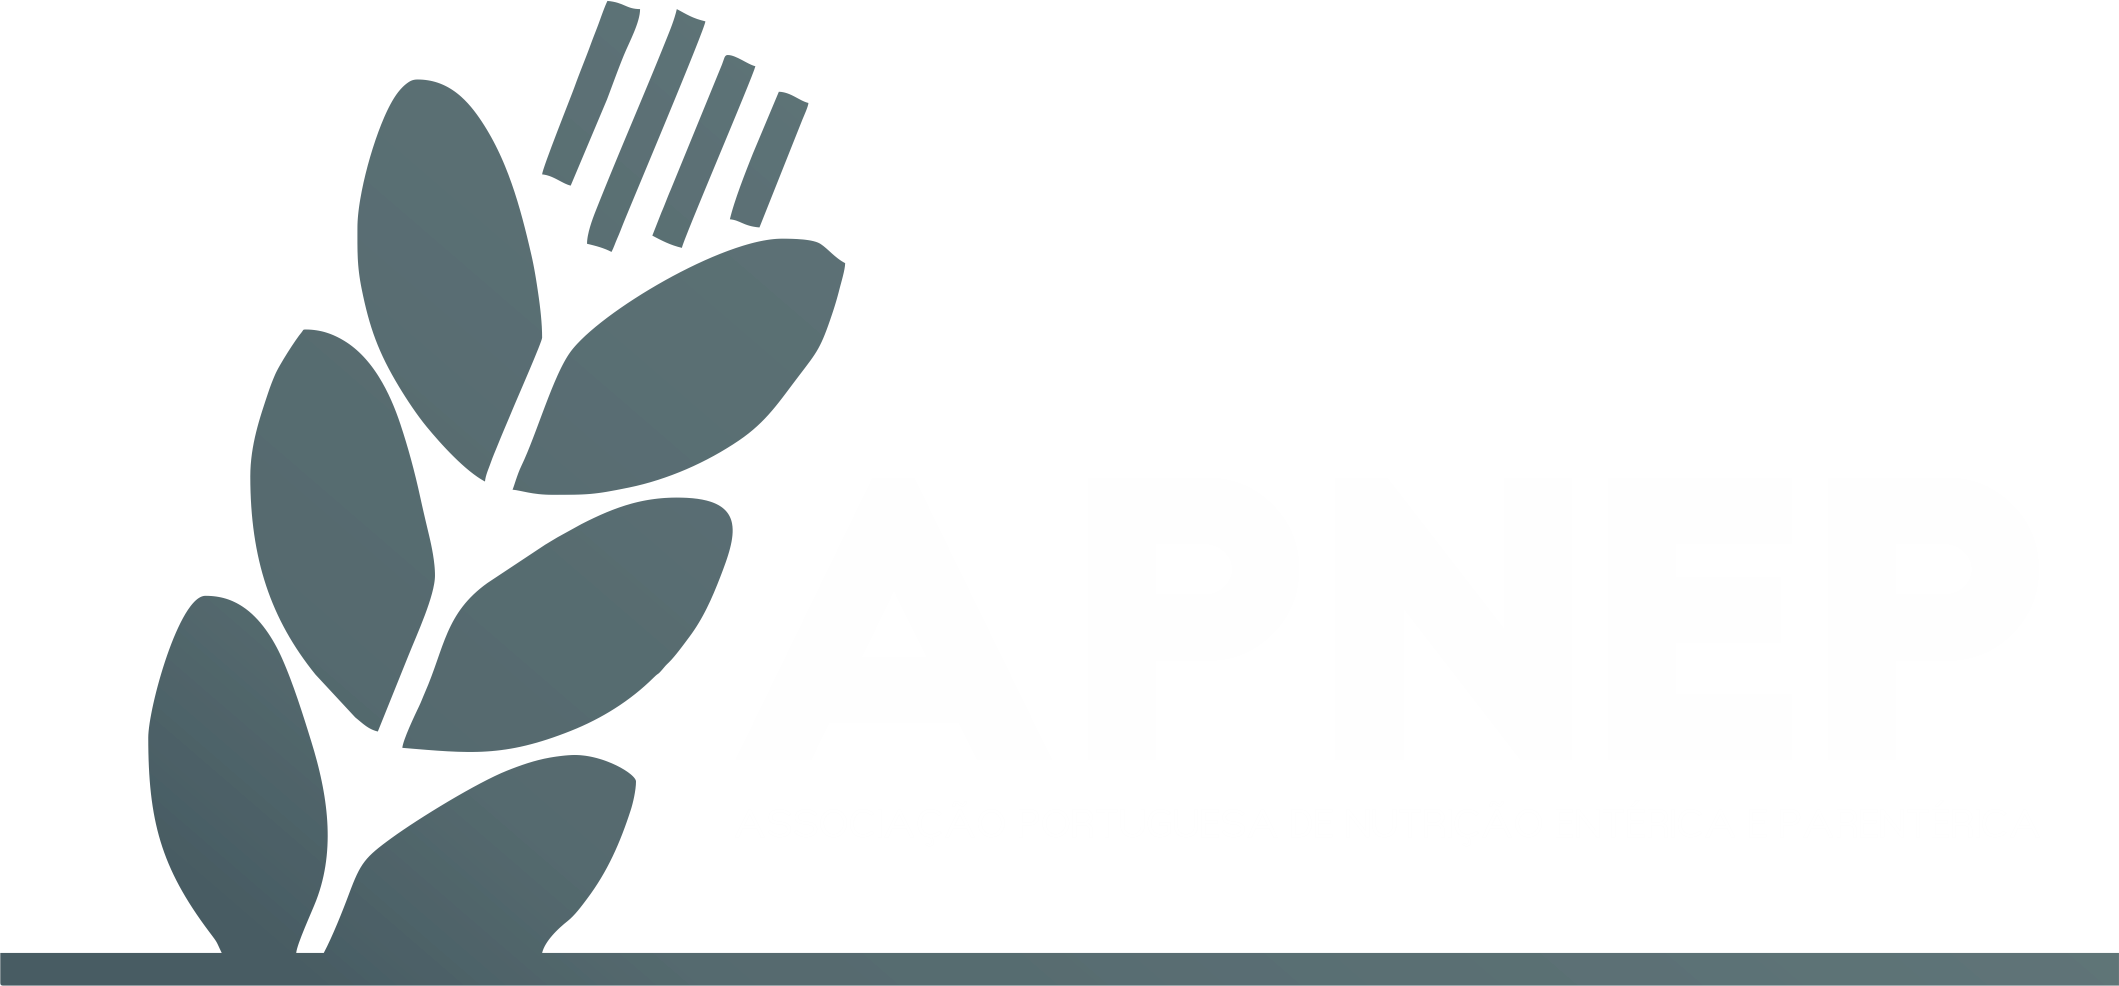 APNEP - Associação Portuguesa de Nutrição Entérica e Parentérica